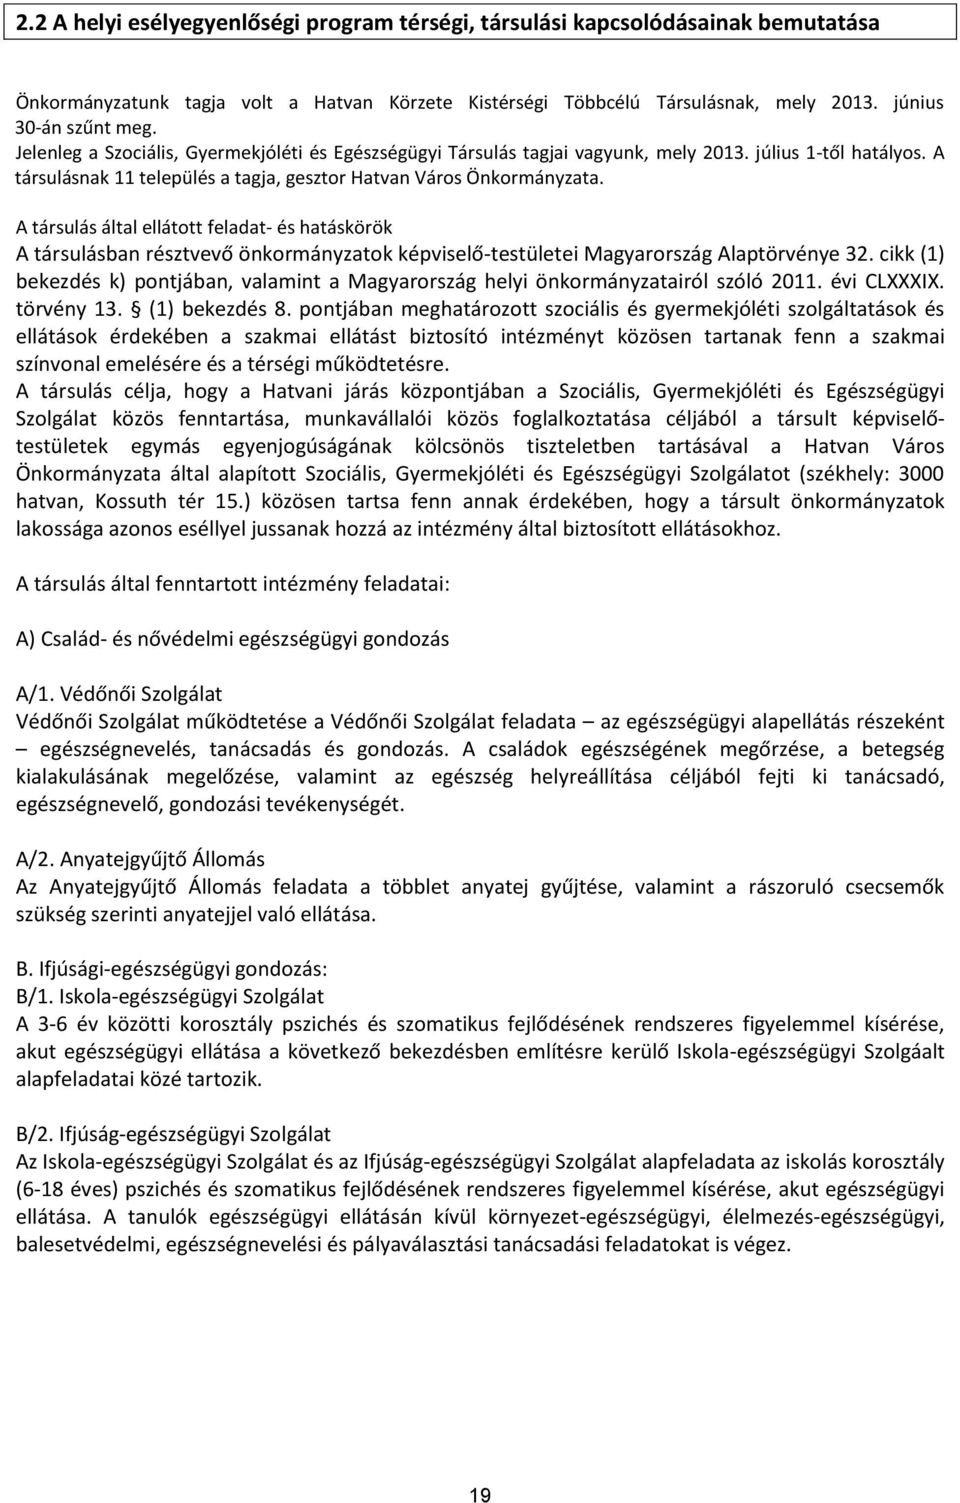 feladat- és hatáskörök társulásban résztvevő önkormányzatok képviselő-testületei Magyarország laptörvénye 32 cikk (1) bekezdés k) pontjában, valamint a Magyarország helyi önkormányzatairól szóló 2011